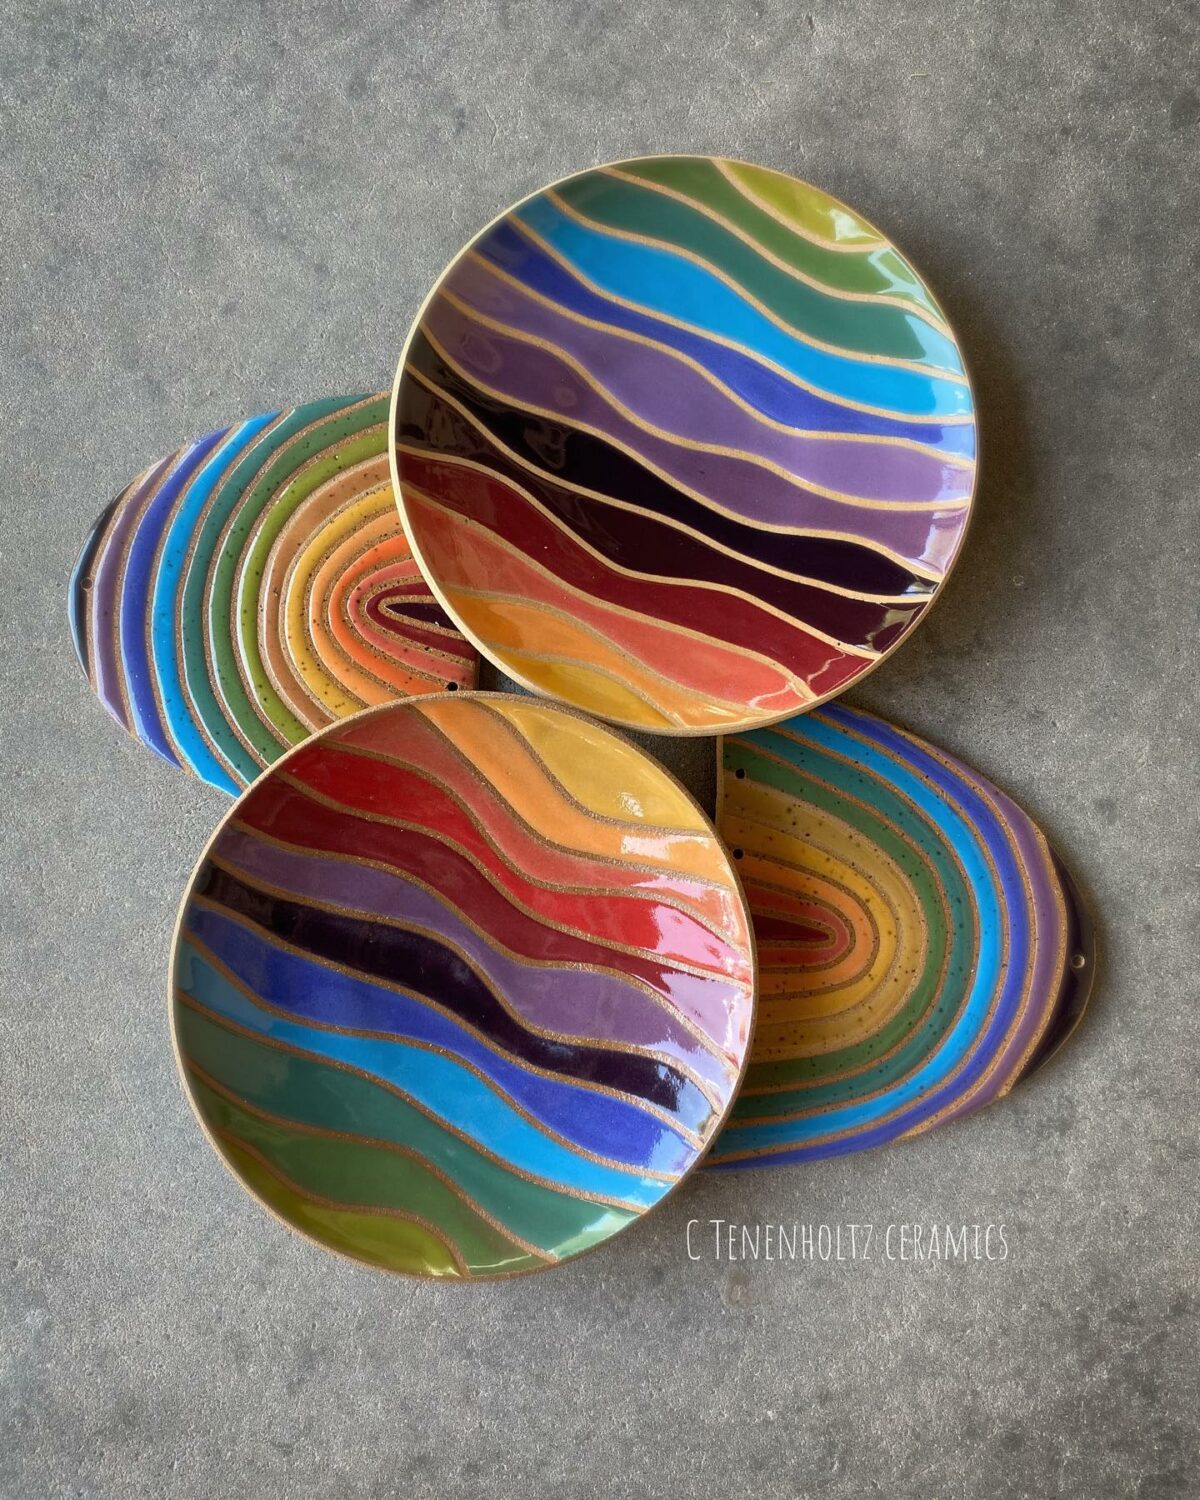 Rainbow Ceramics Gorgeous Multicolored Ceramic Pieces By Christine Tenenholtz (3)